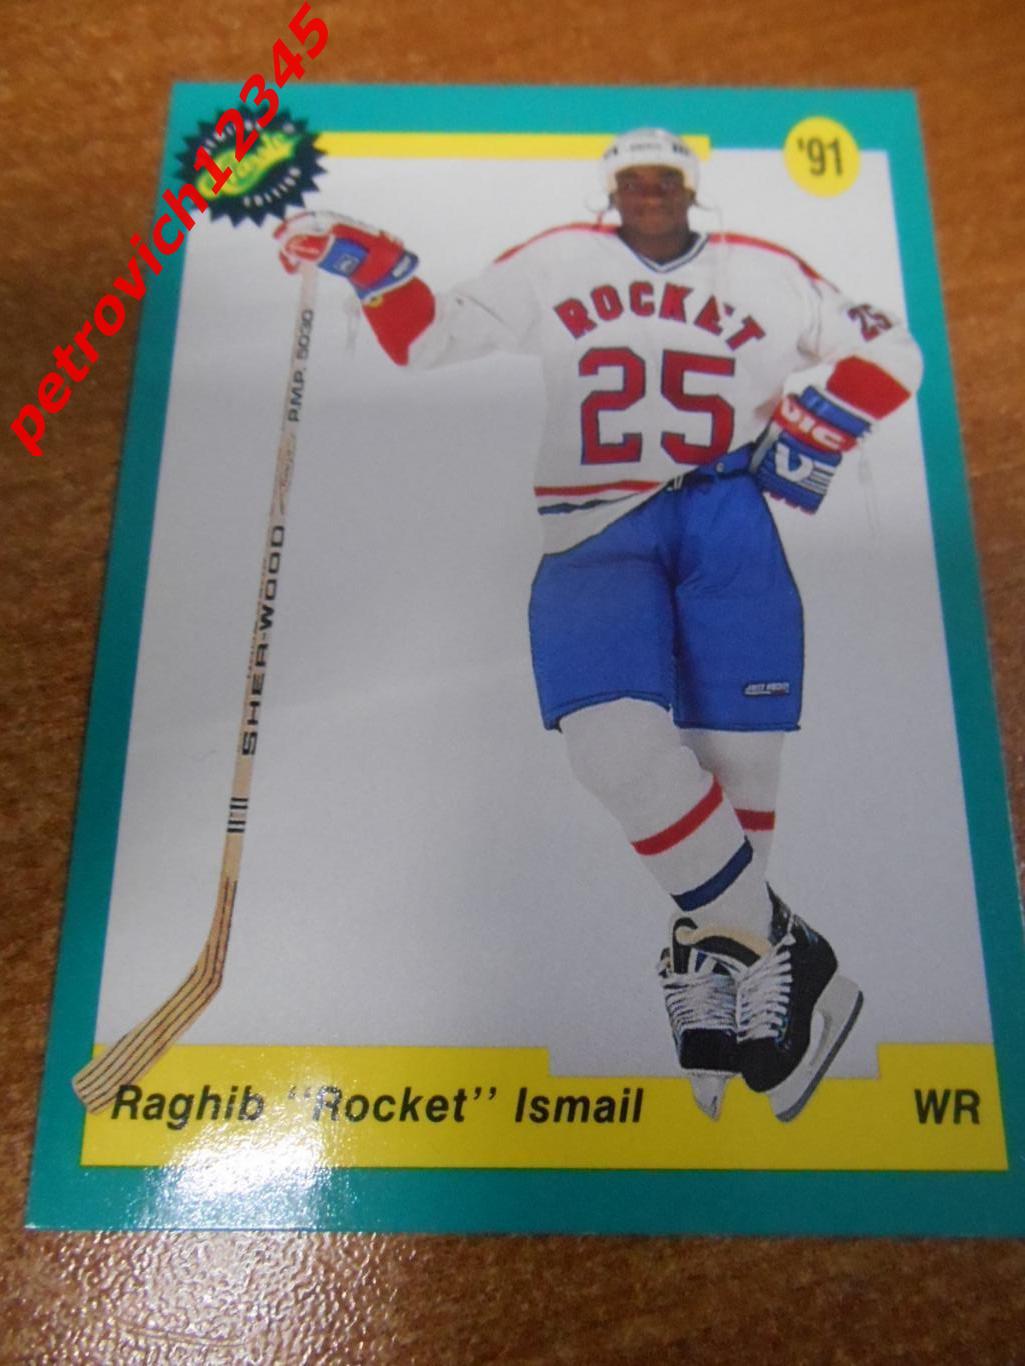 хоккей.карточка - B - Raghib Rocket Ismail